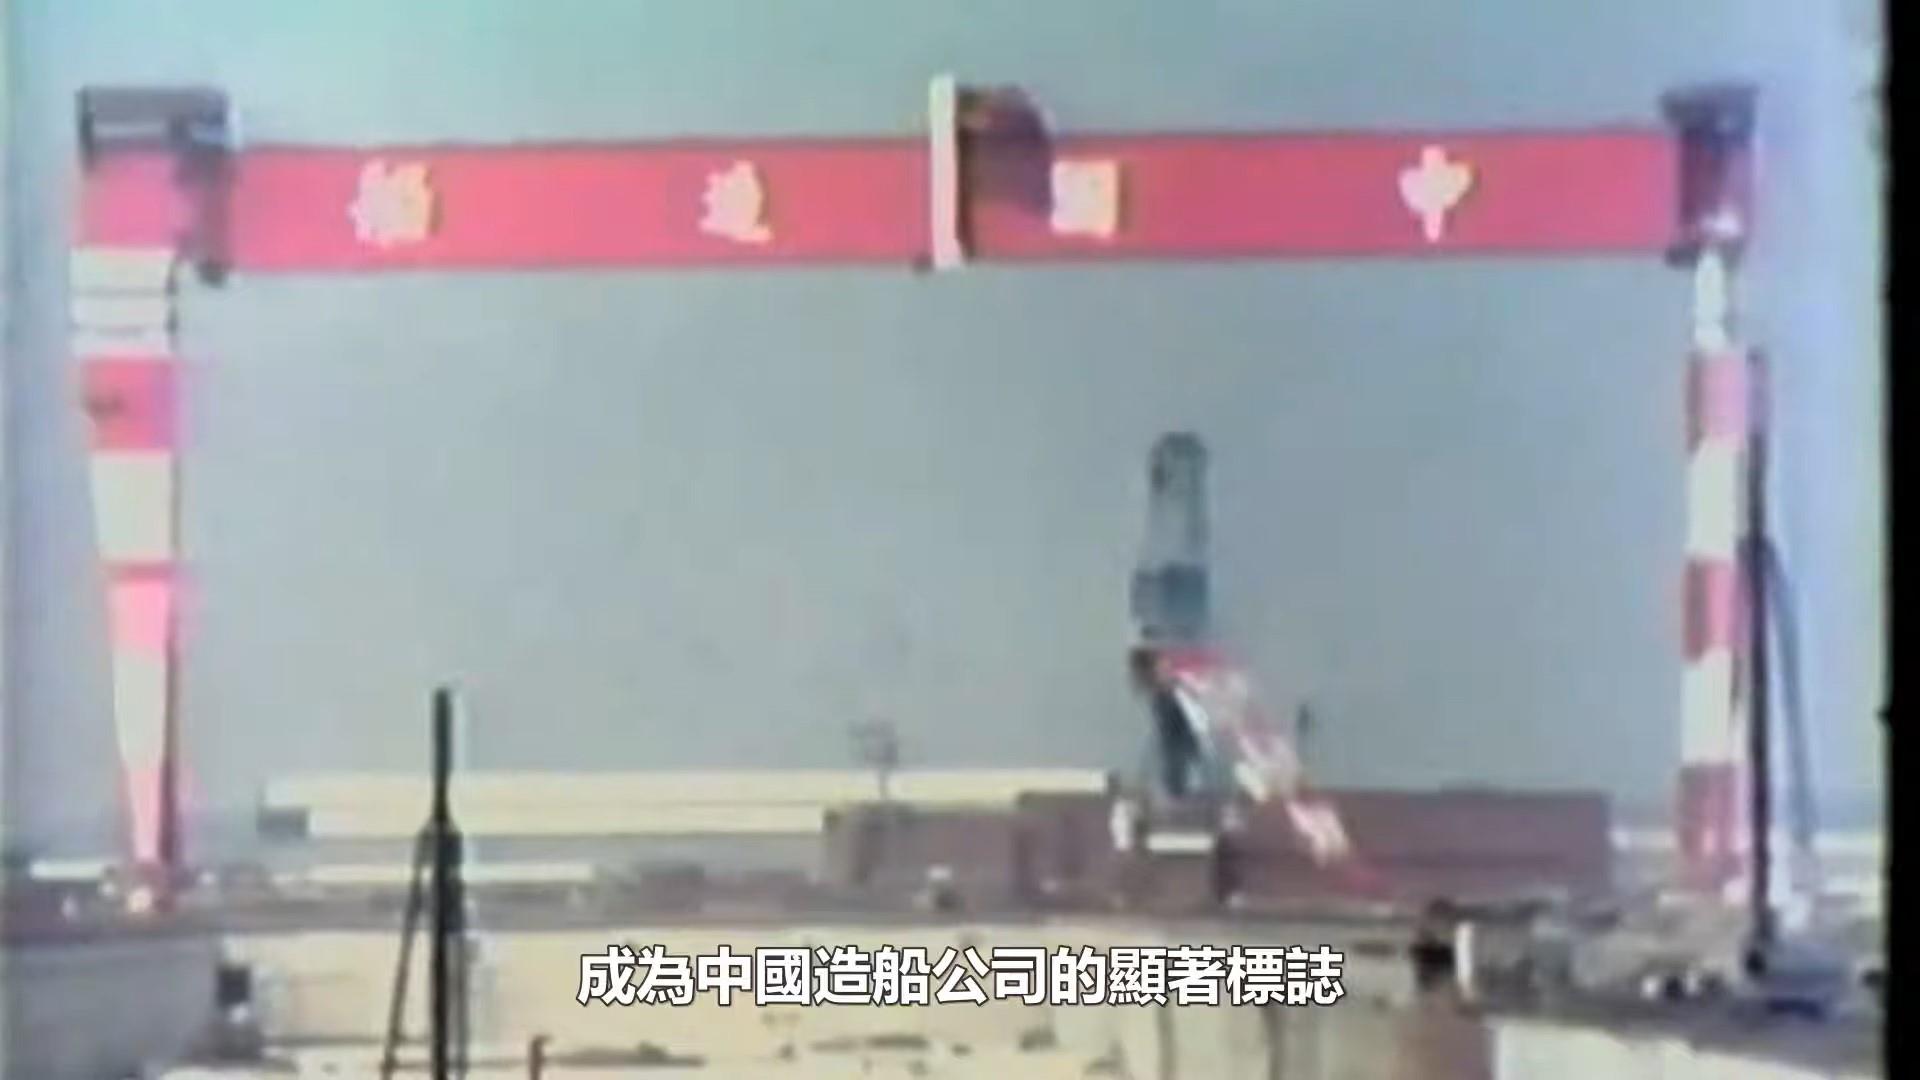 圖6 巨霸型吊車為中國造船公司顯著標誌